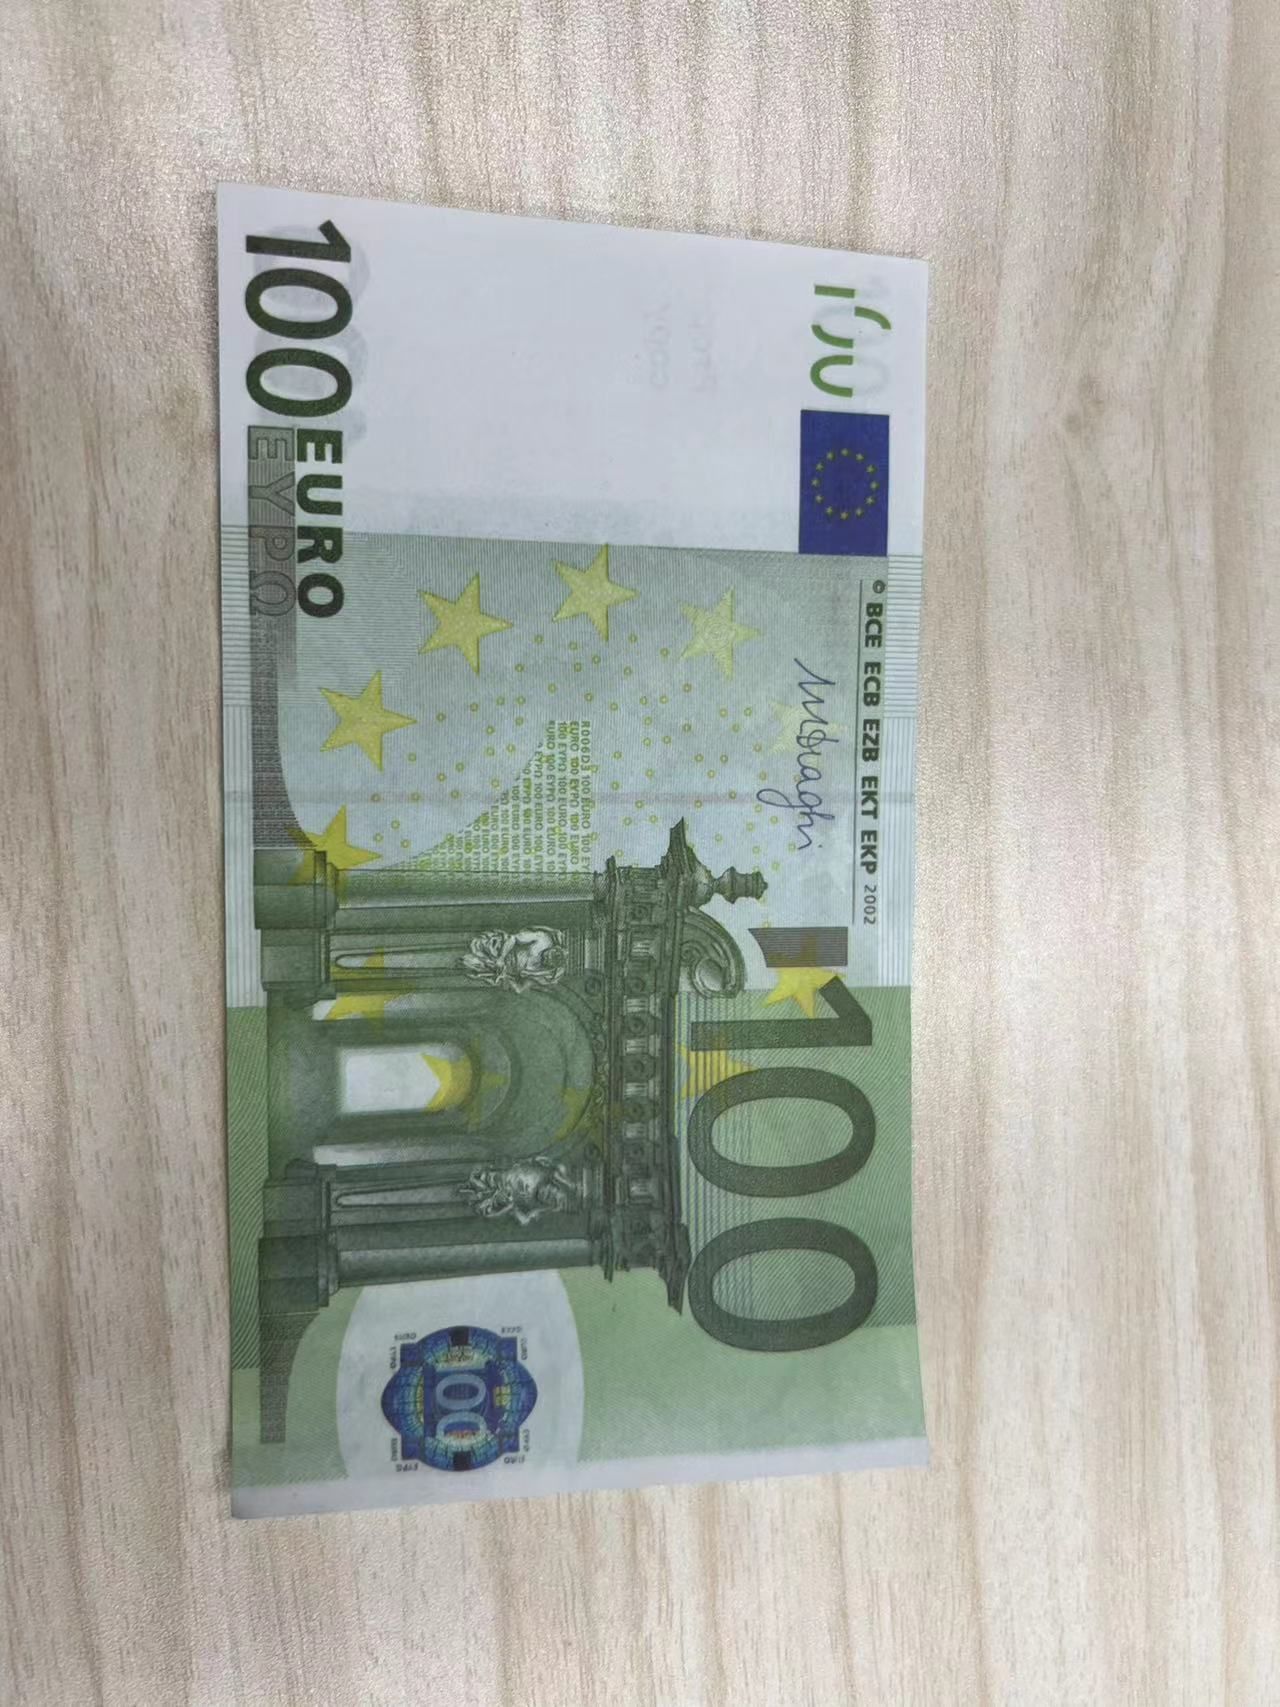 100euro